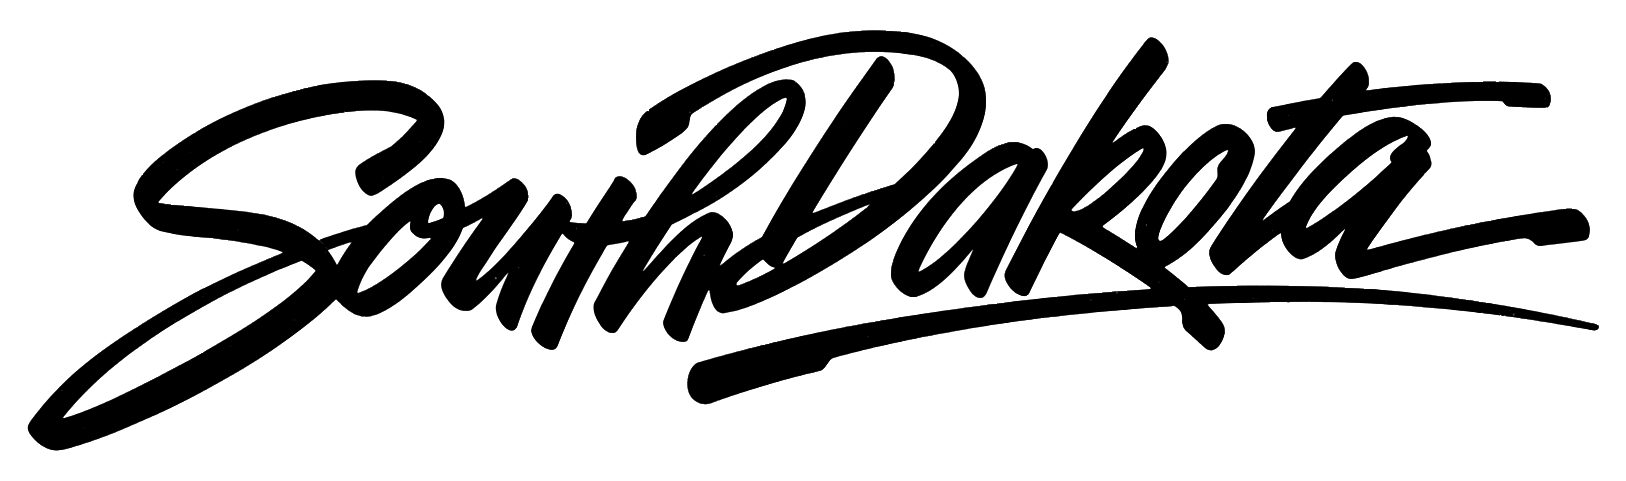 South-Dakota-logo-script